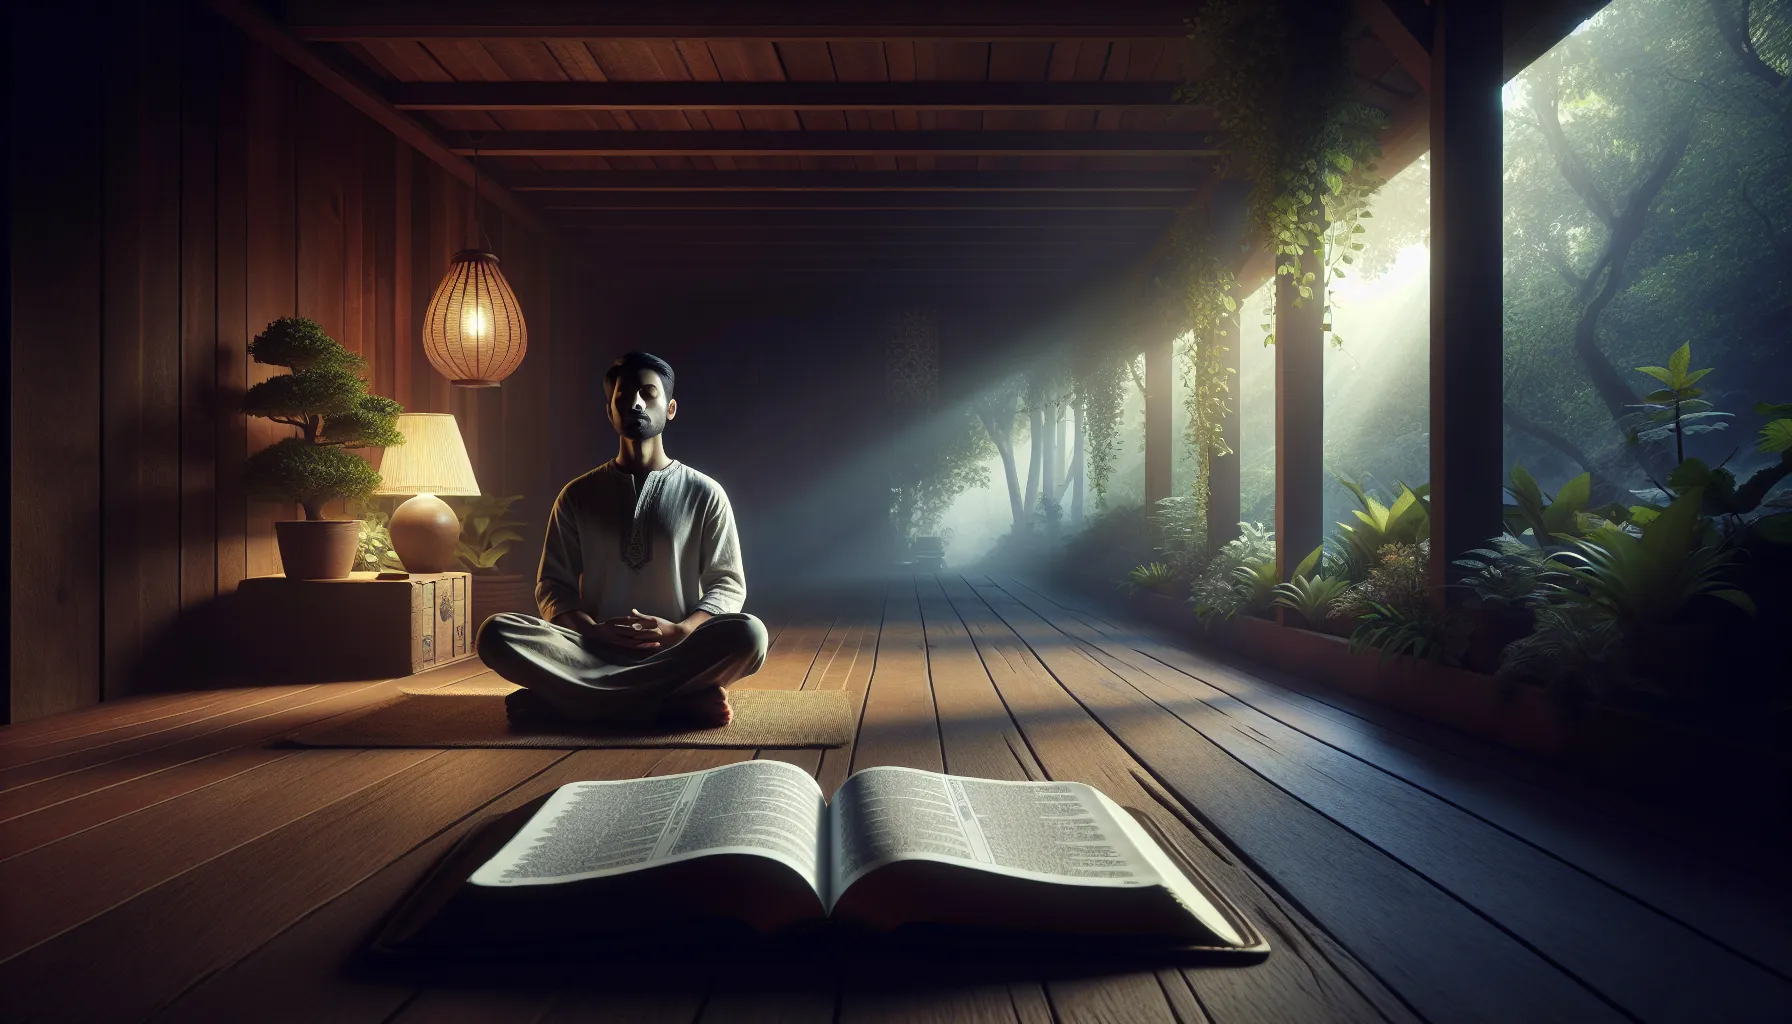 Una imagen representando la meditación en la Palabra de Dios para transformación espiritual.